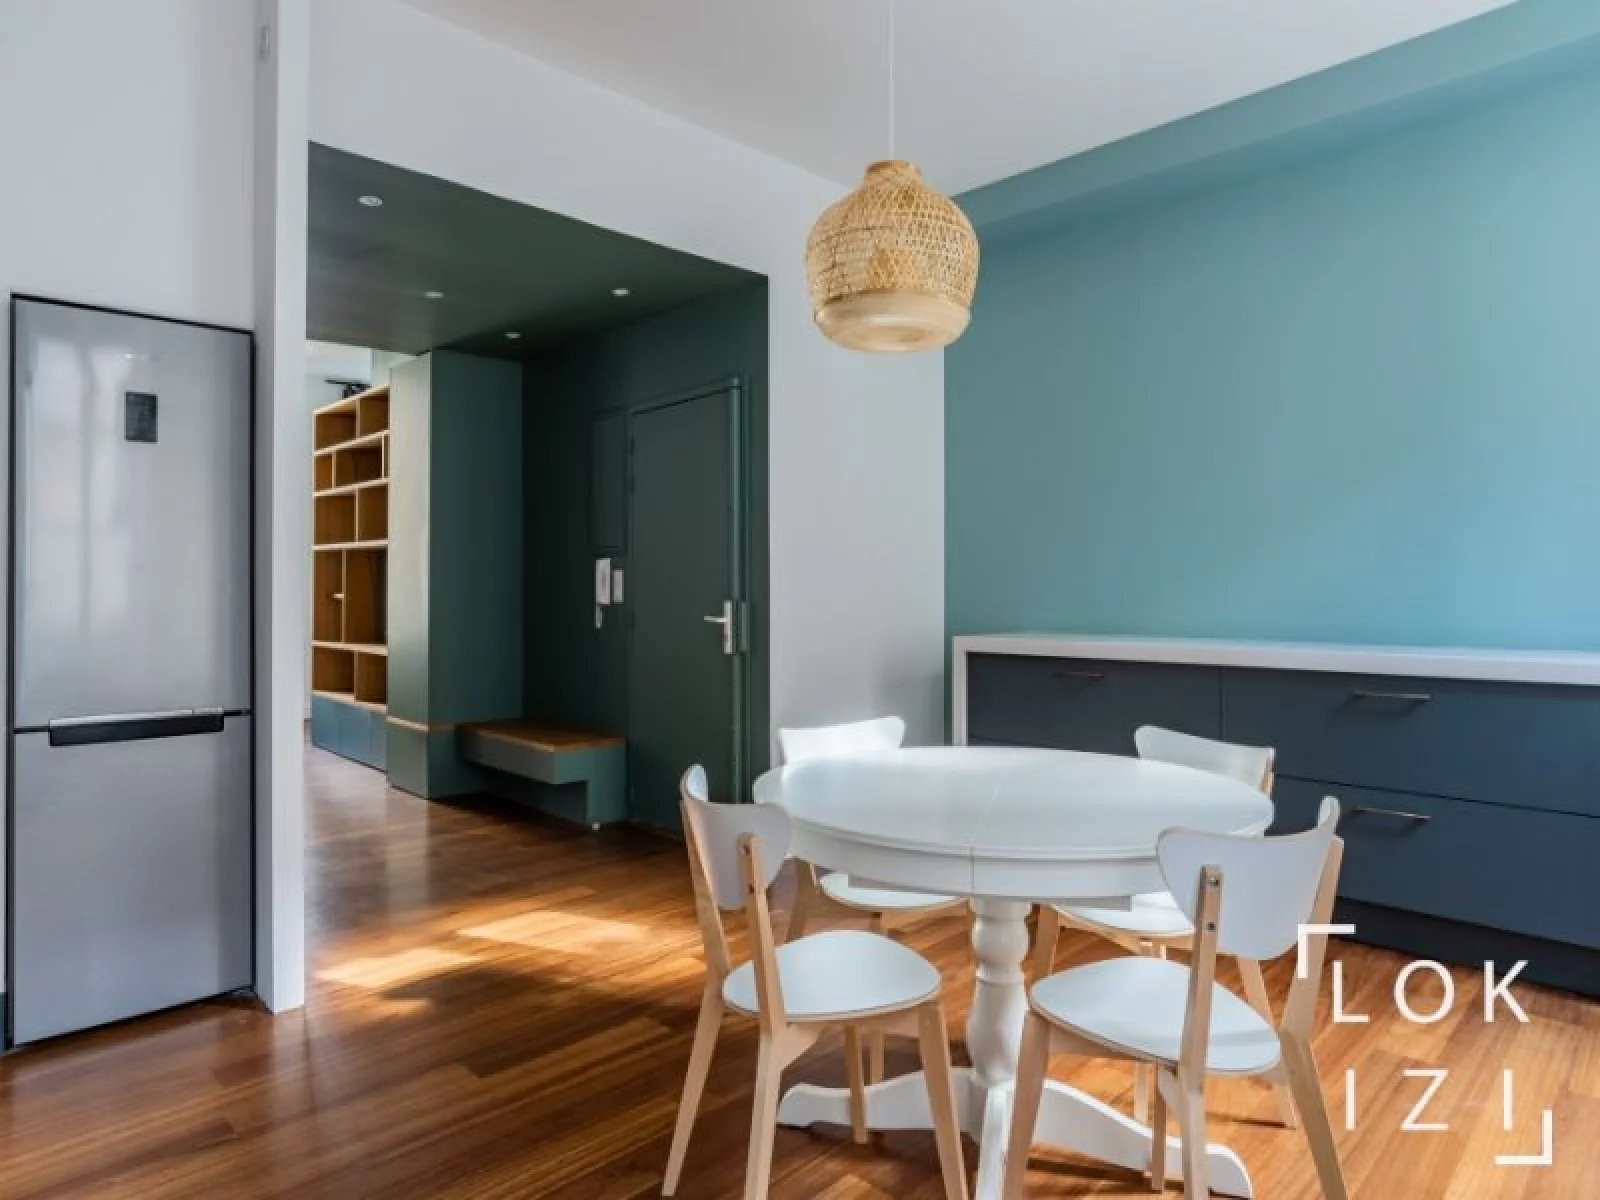 Location appartement duplex T3 meublé 90m² (Bordeaux centre - Victor Hugo)